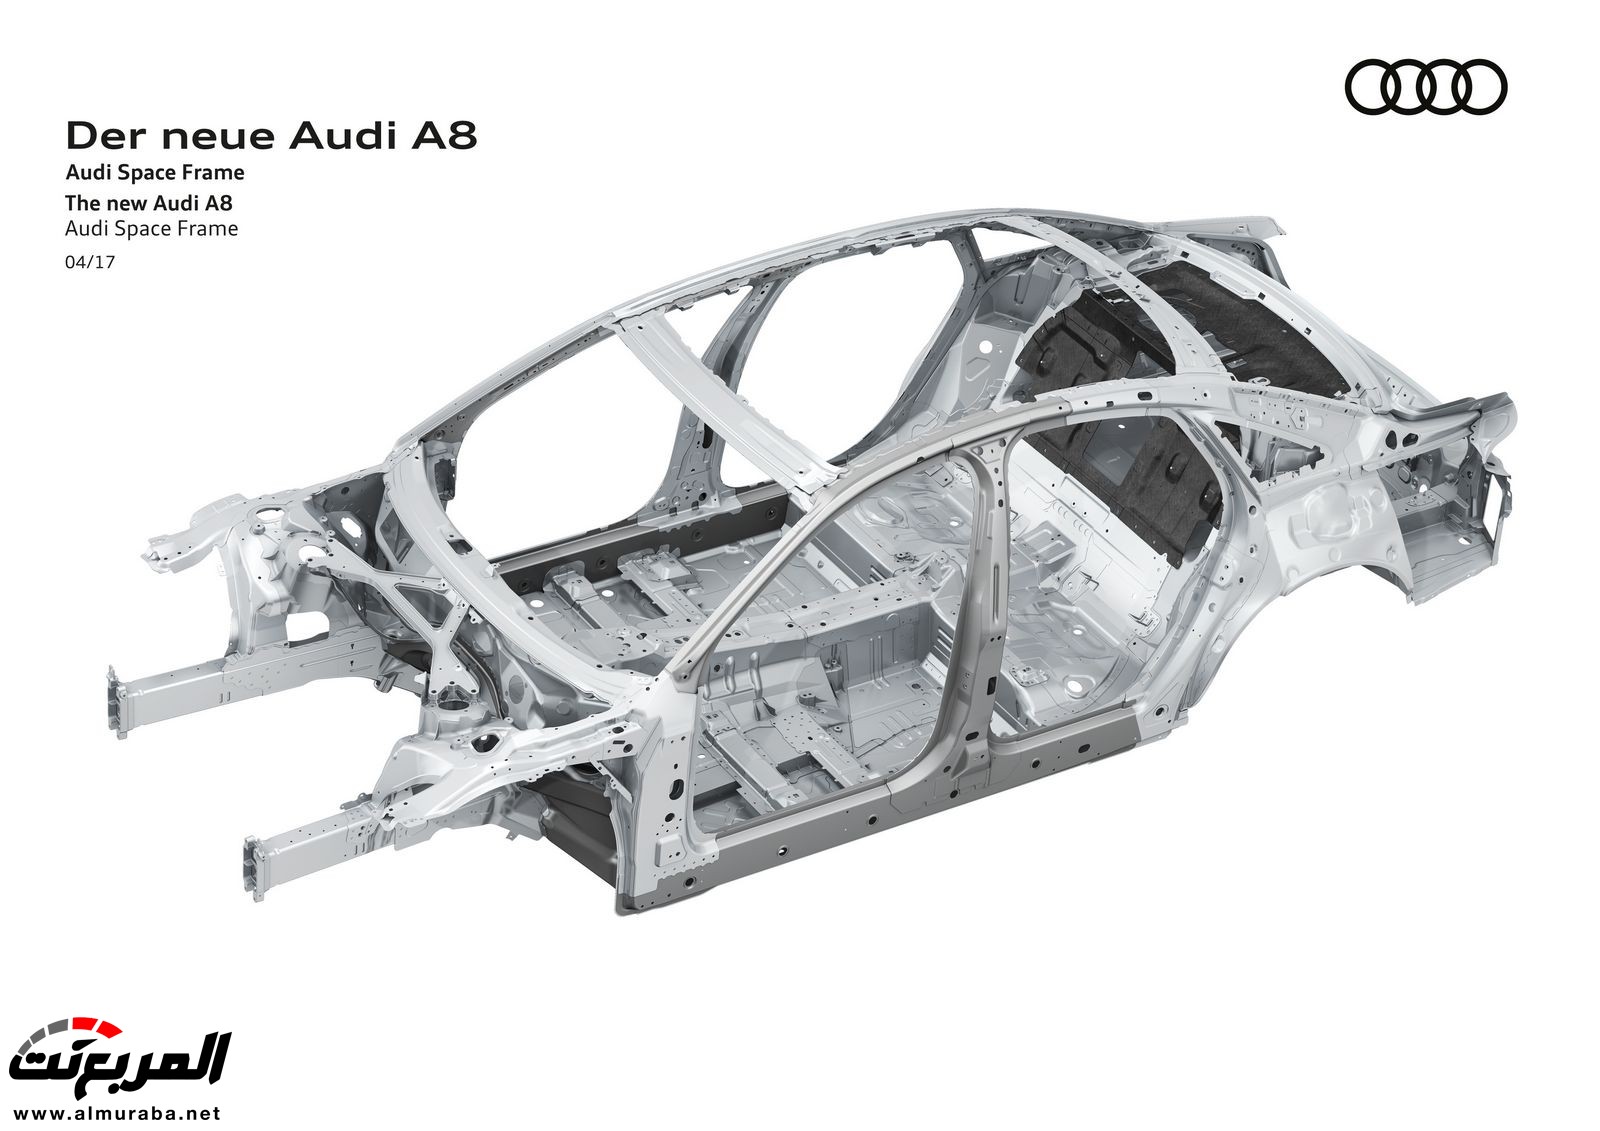 أودي A8 2018 الجديدة كلياً تكشف نفسها بتصميم وتقنيات متطورة "معلومات + 100 صورة" Audi A8 61